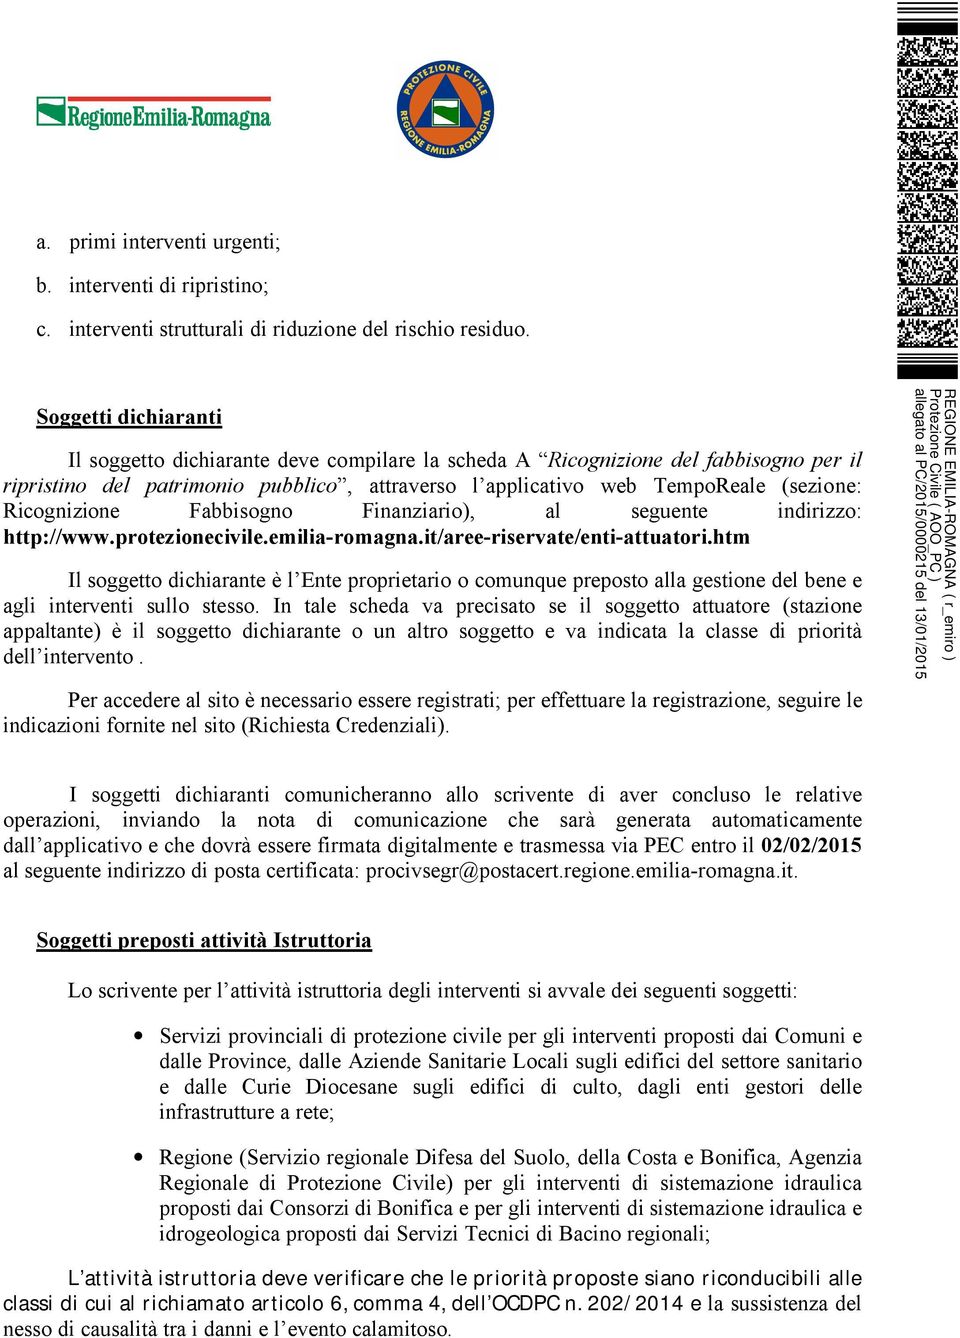 Ricognizione Fabbisogno Finanziario), al seguente indirizzo: http://www.protezionecivile.emilia-romagna.it/aree-riservate/enti-attuatori.